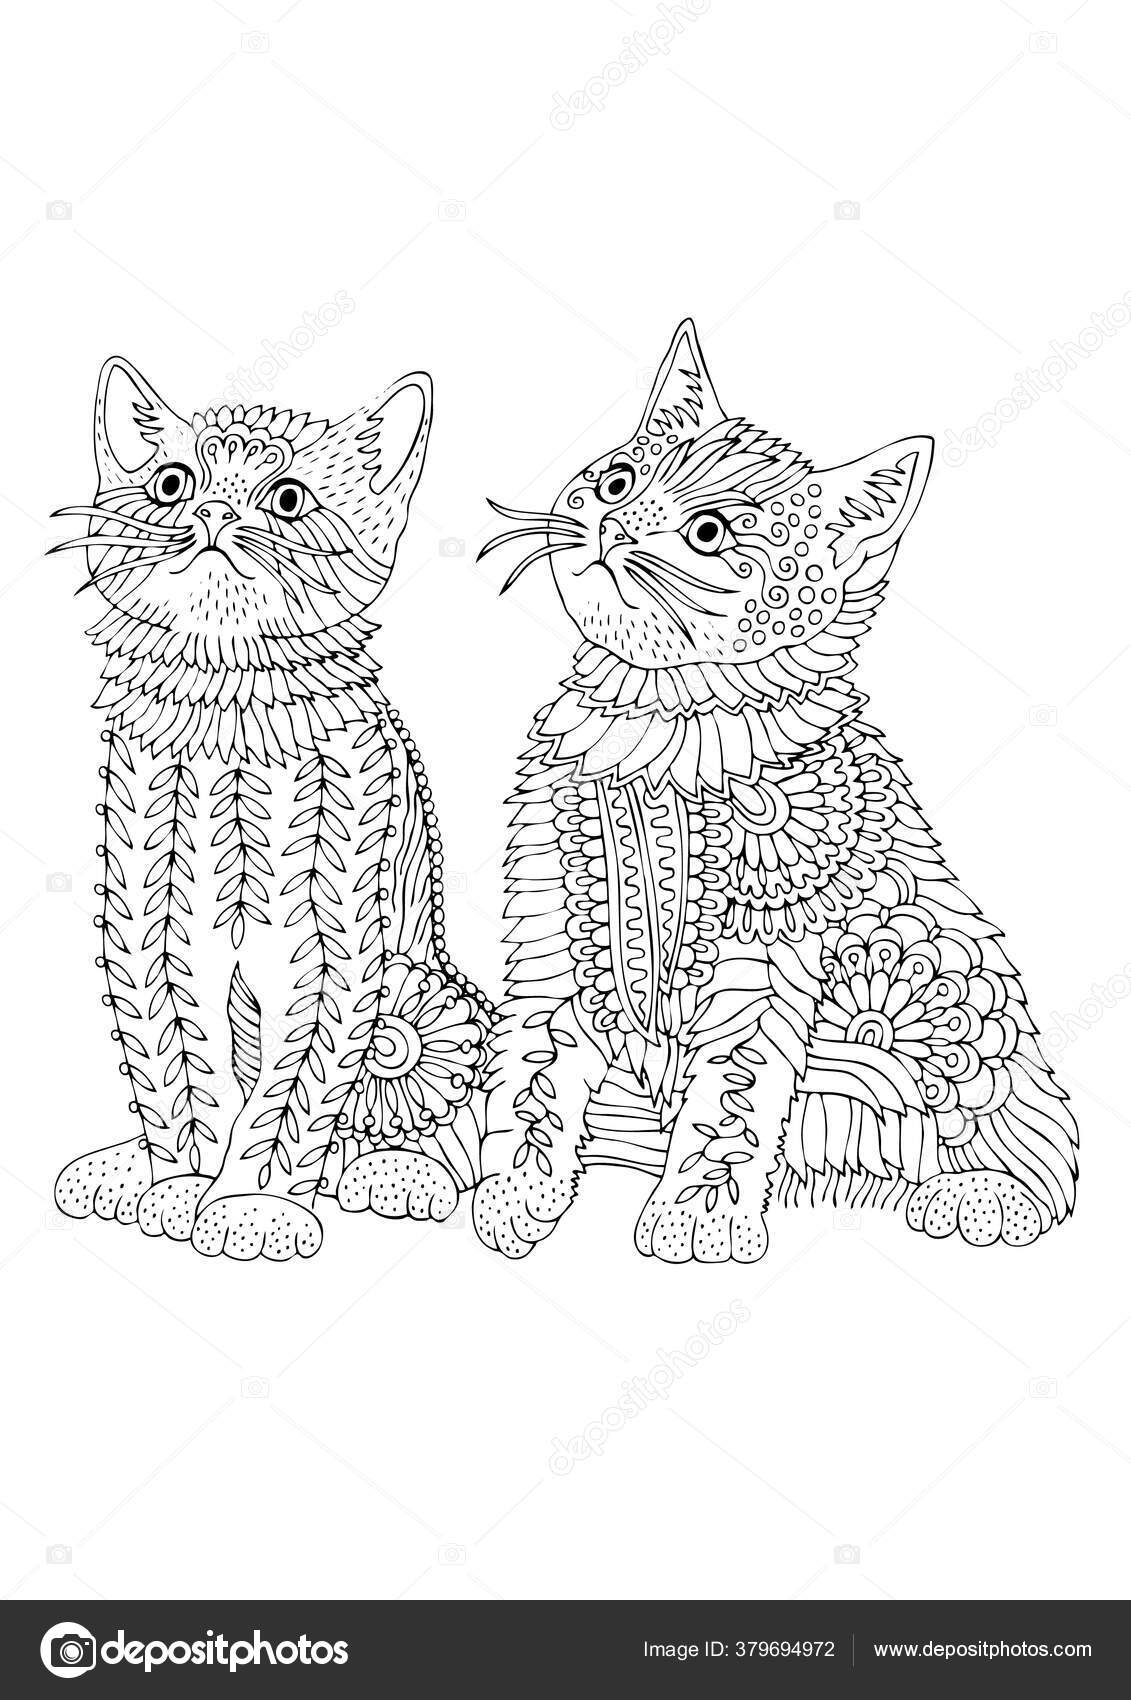 Arte de linha de casal de gatos para colorir página esboço desenhado à mão  de gato casal de gatos esboço desenho de gato